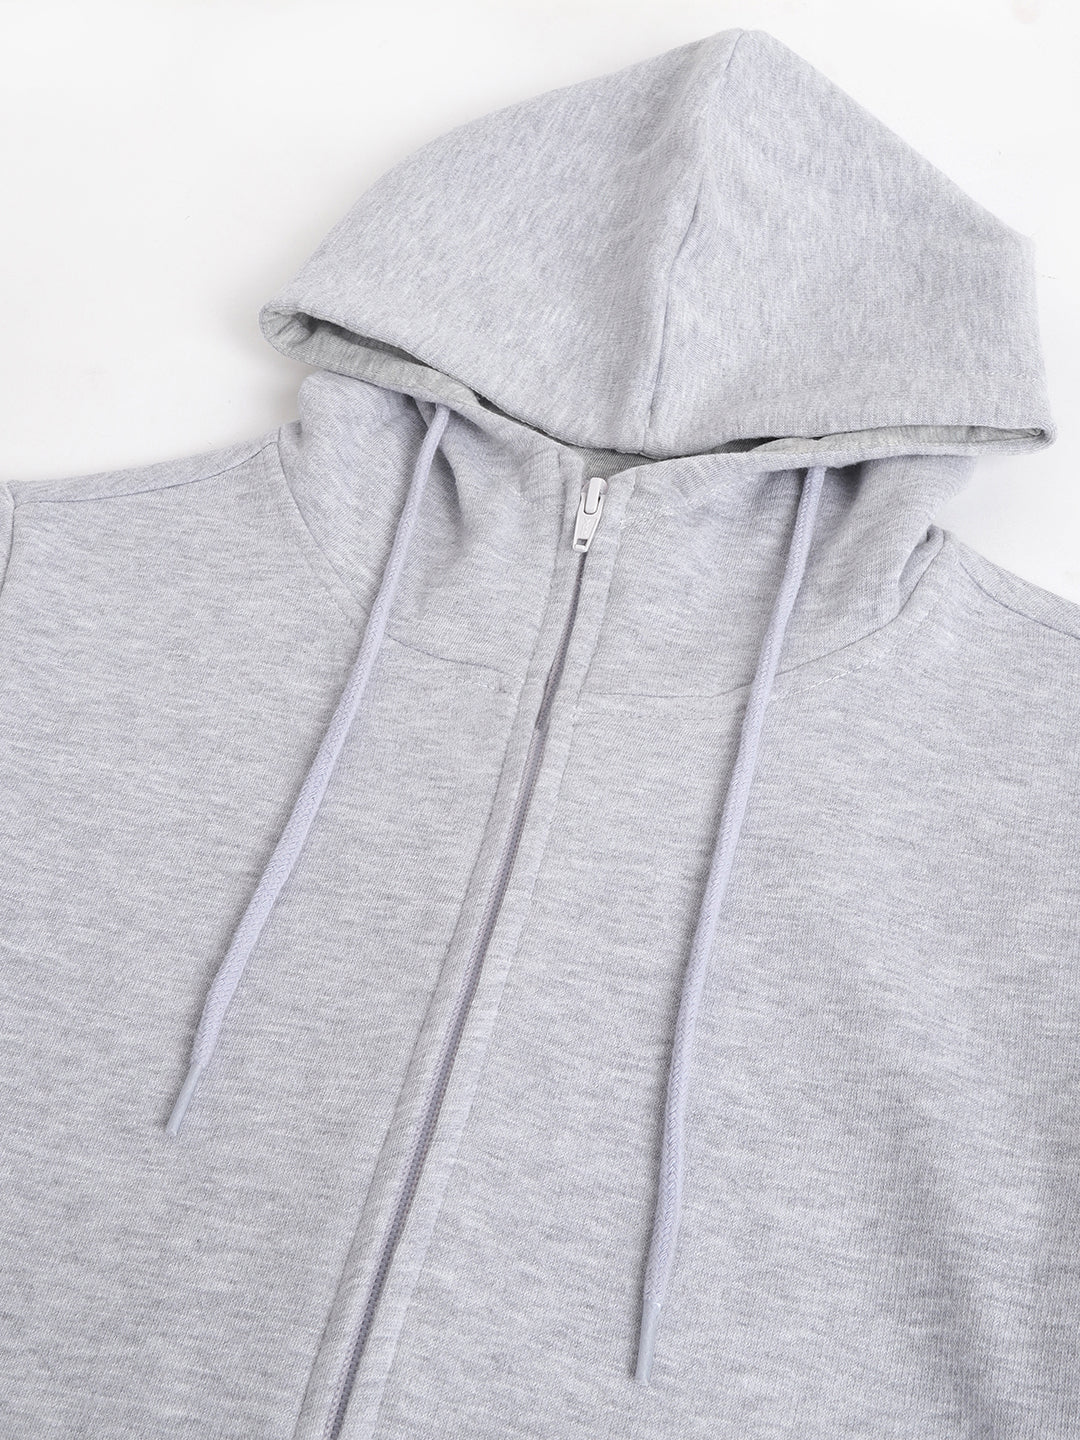 Women Melange Grey Solid Front Open Zipper Hooded Sweatshirt